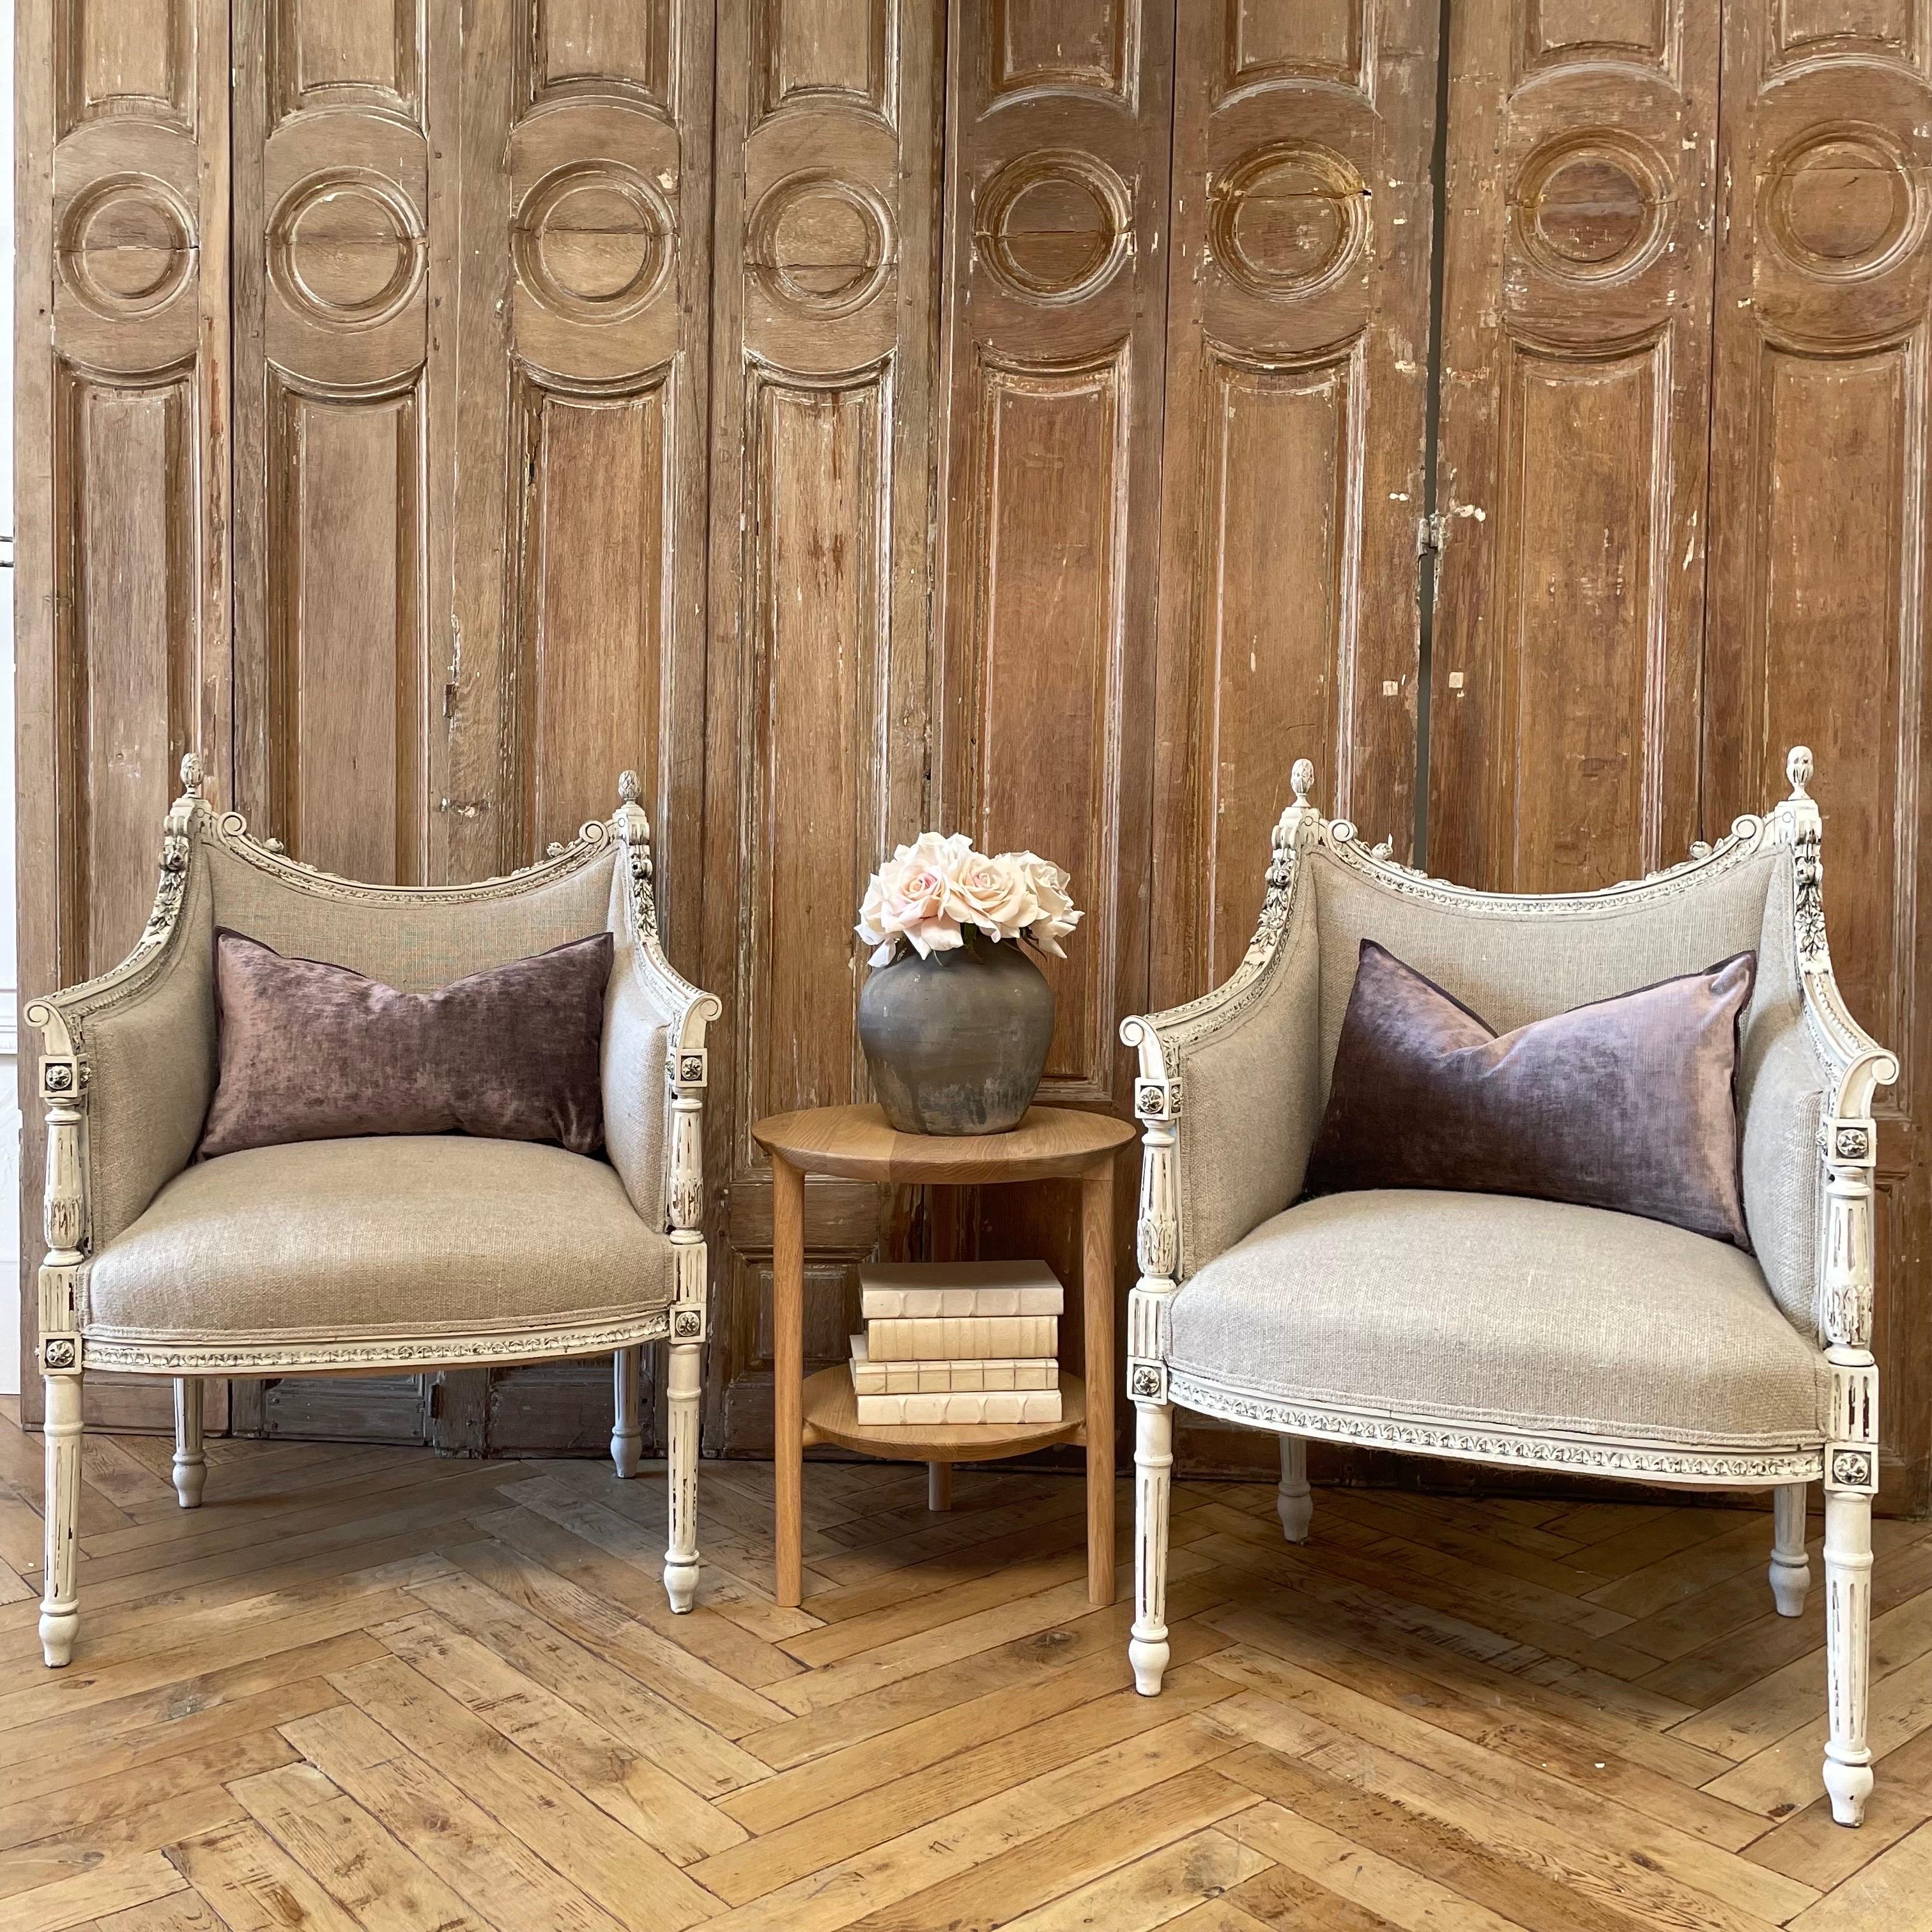 Magnifiques chaises de style Louis XVI sculptées et peintes, tapissées en 100% pur lin irlandais dans une couleur naturelle de lin.
La peinture est de couleur blanc huître, avec de subtils bords en relief, et une finition de patine glacée